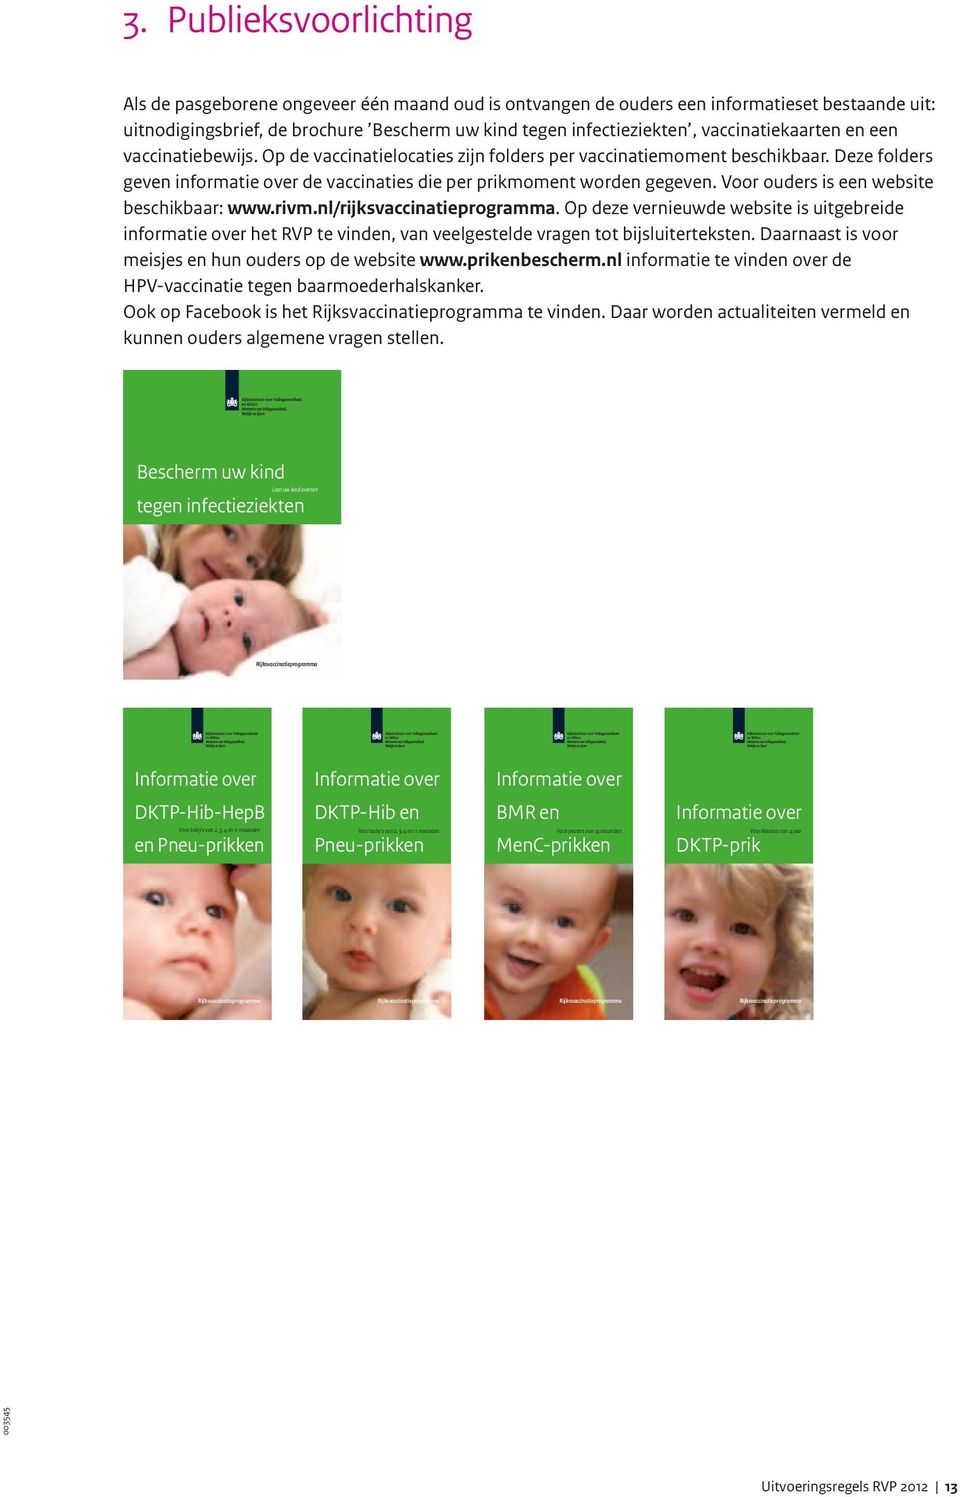 Voor ouders is een website beschikbaar: www.rivm.nl/rijksvaccinatieprogramma.